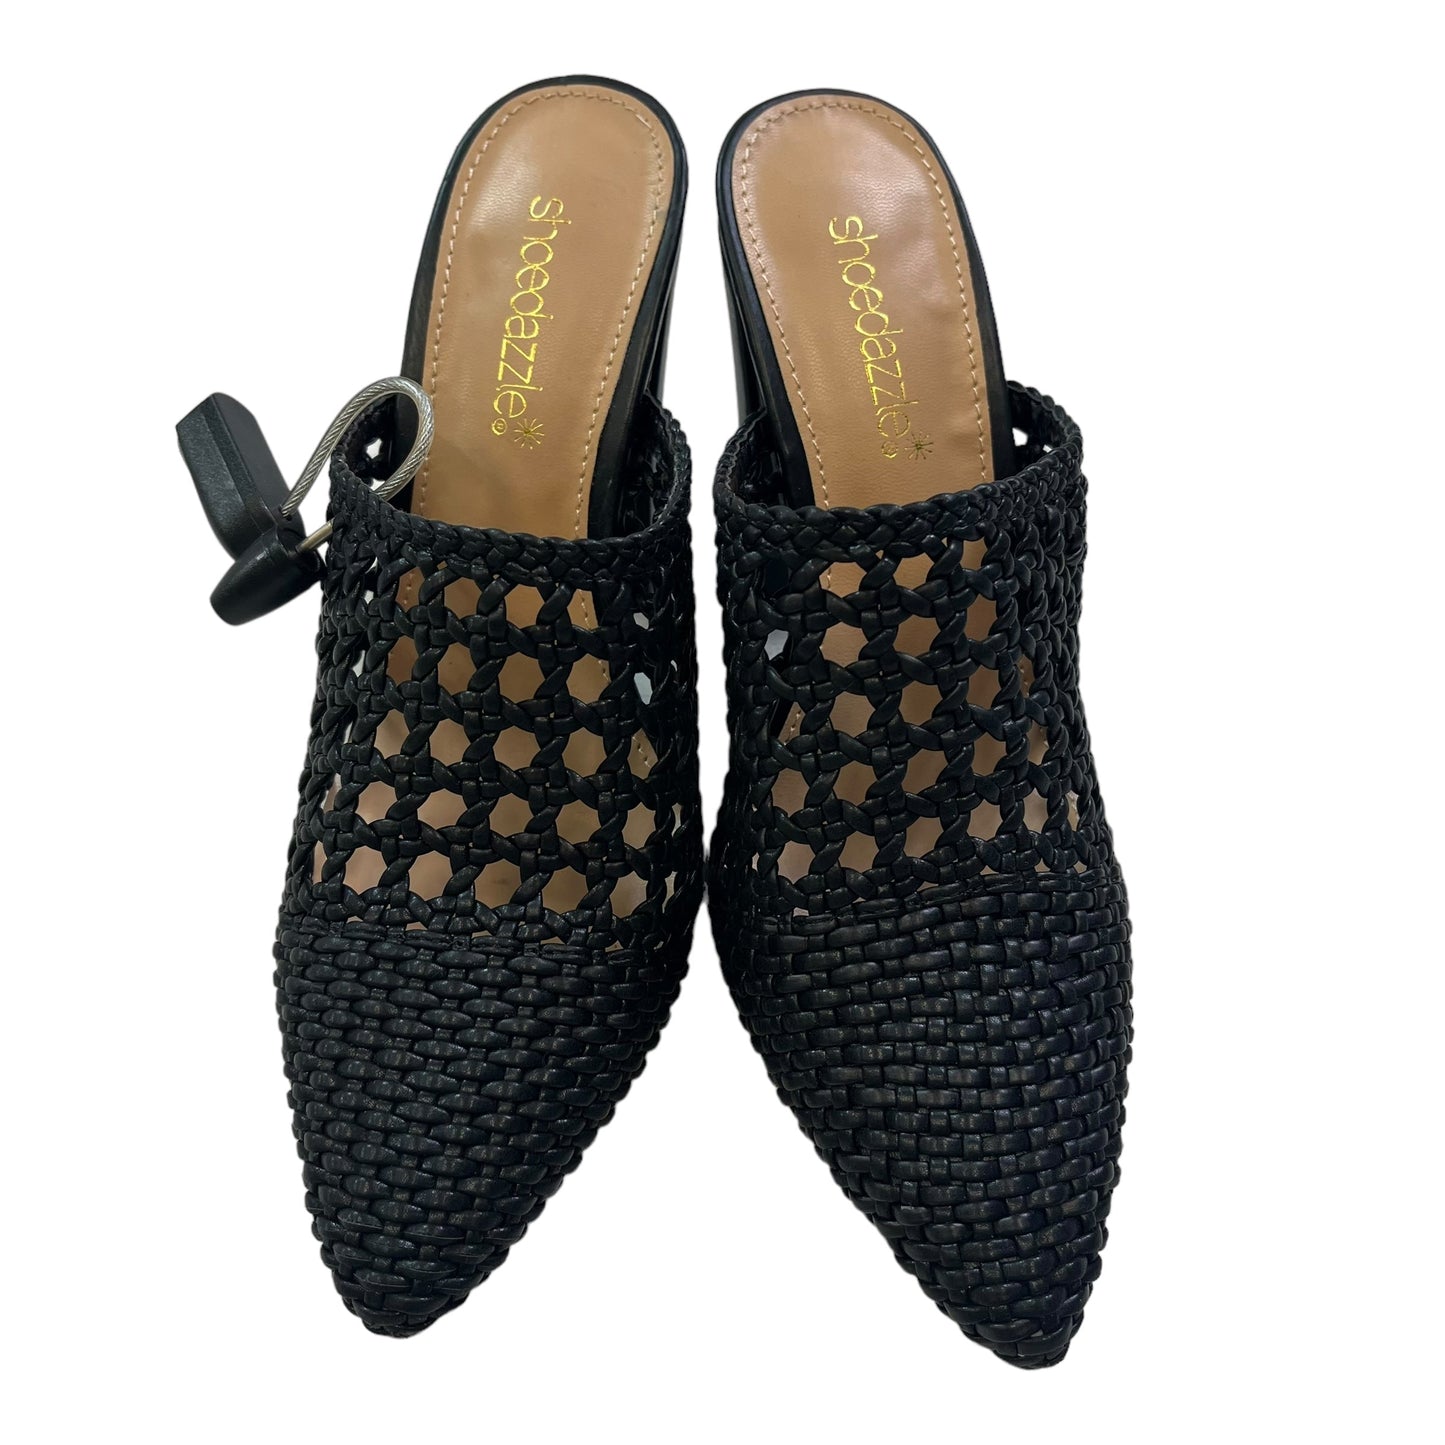 Black Shoes Heels Block Shoedazzle, Size 7